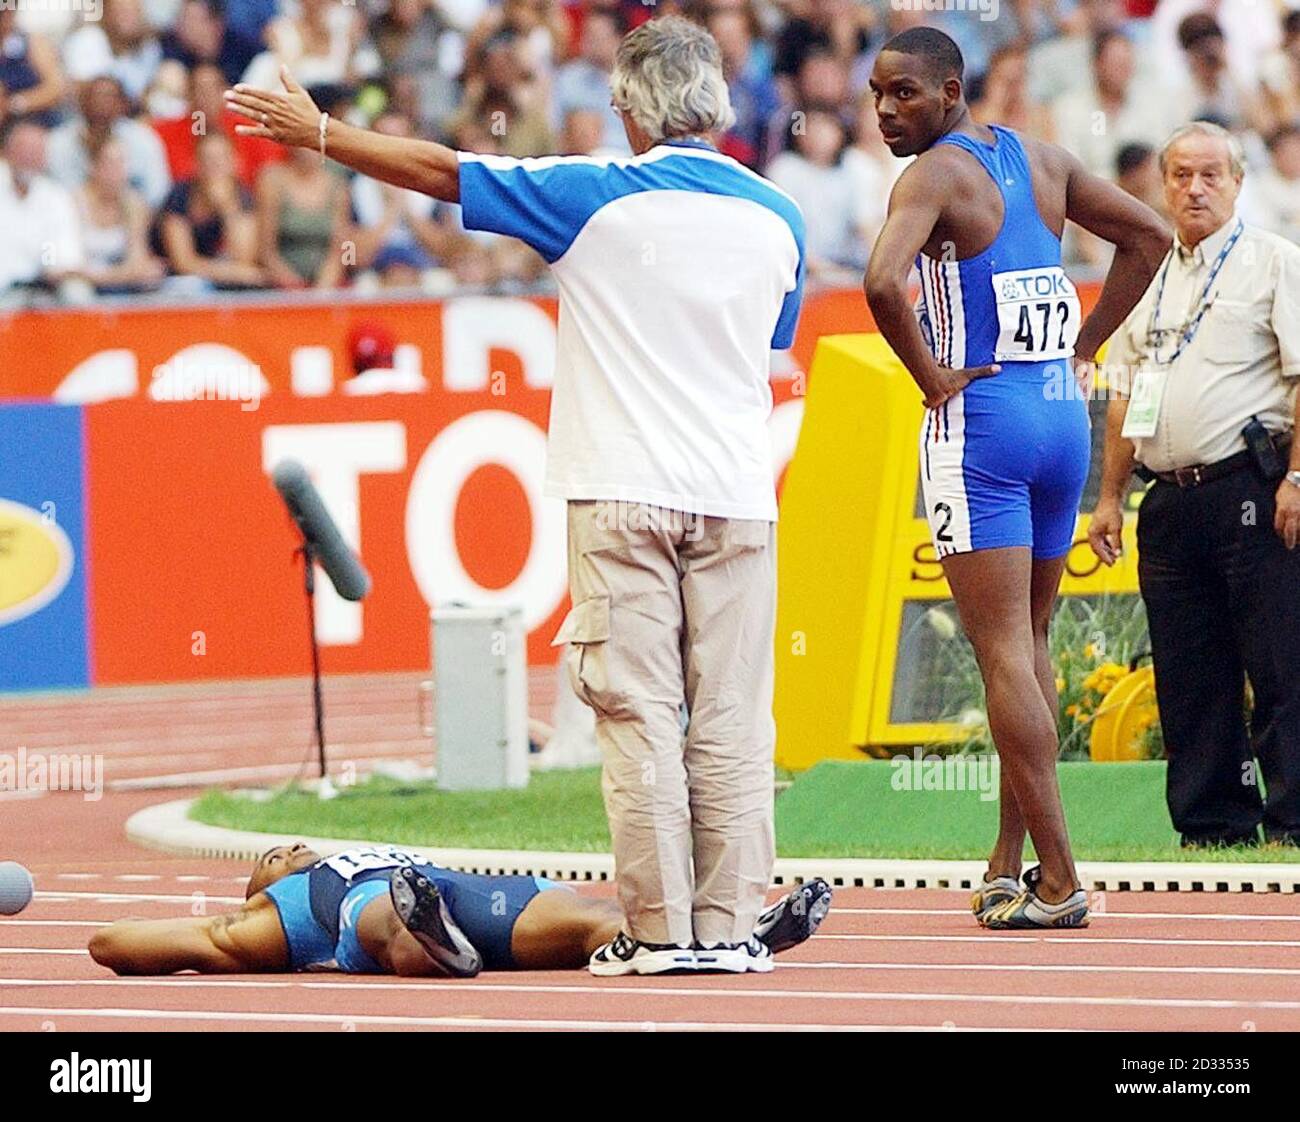 Jon Drummond (en bas) des États-Unis se trouve sur le dos, refusant de sortir de la piste après qu'il ait été disqualifié dans le quart-finale du 100m masculin aux Championnats du monde d'athlétisme à Paris, en France, le dimanche 24 août 2003. Banque D'Images